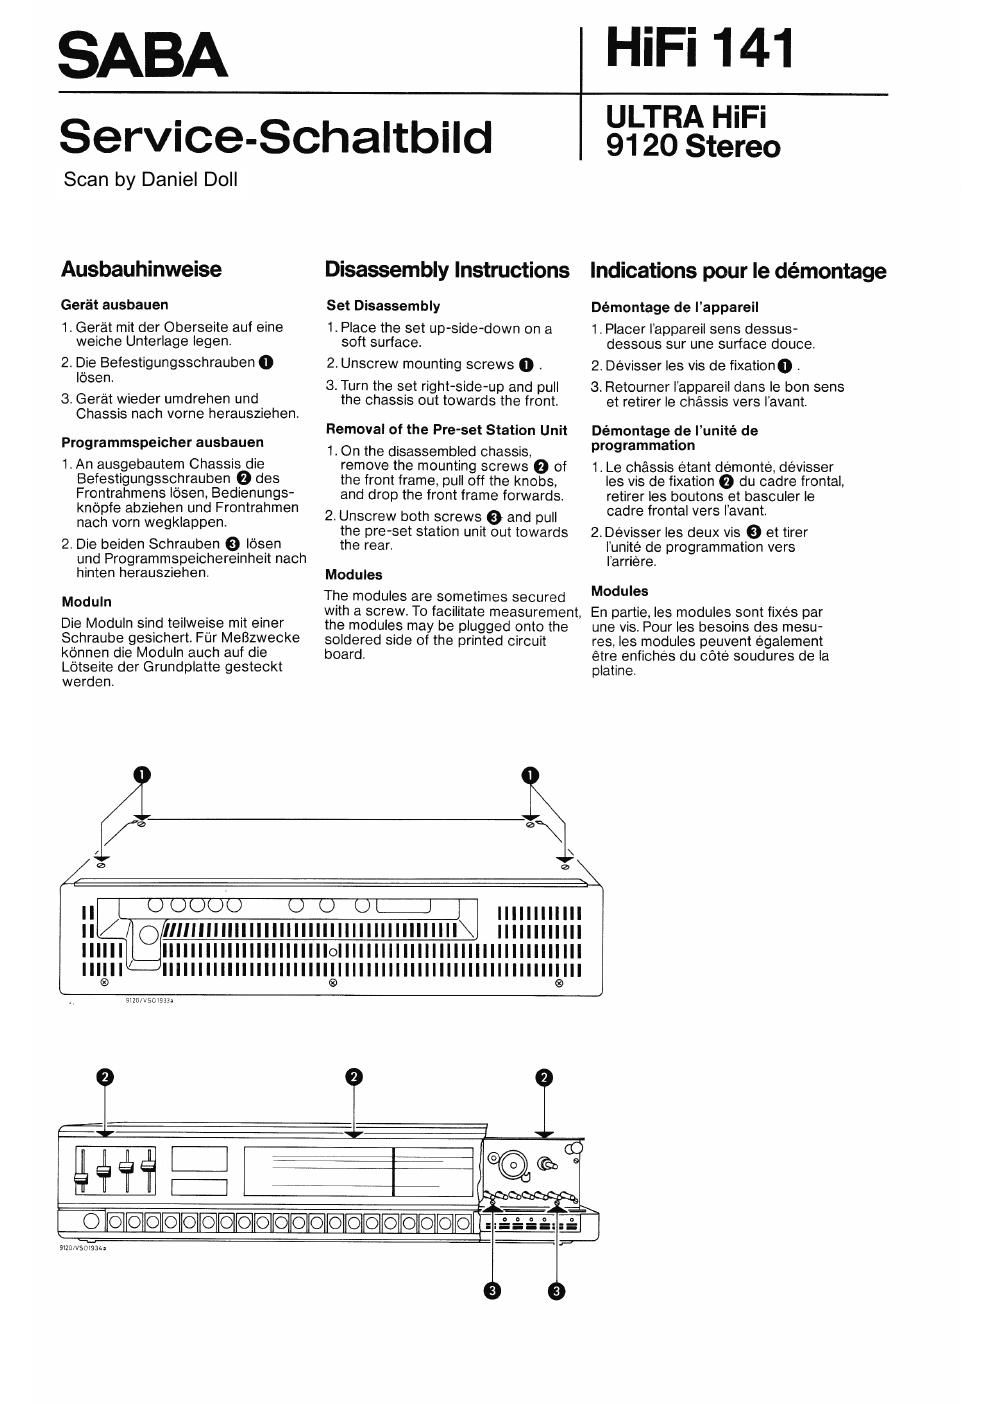 Service Manual-Anleitung für Saba Ultra HiFi 9120 